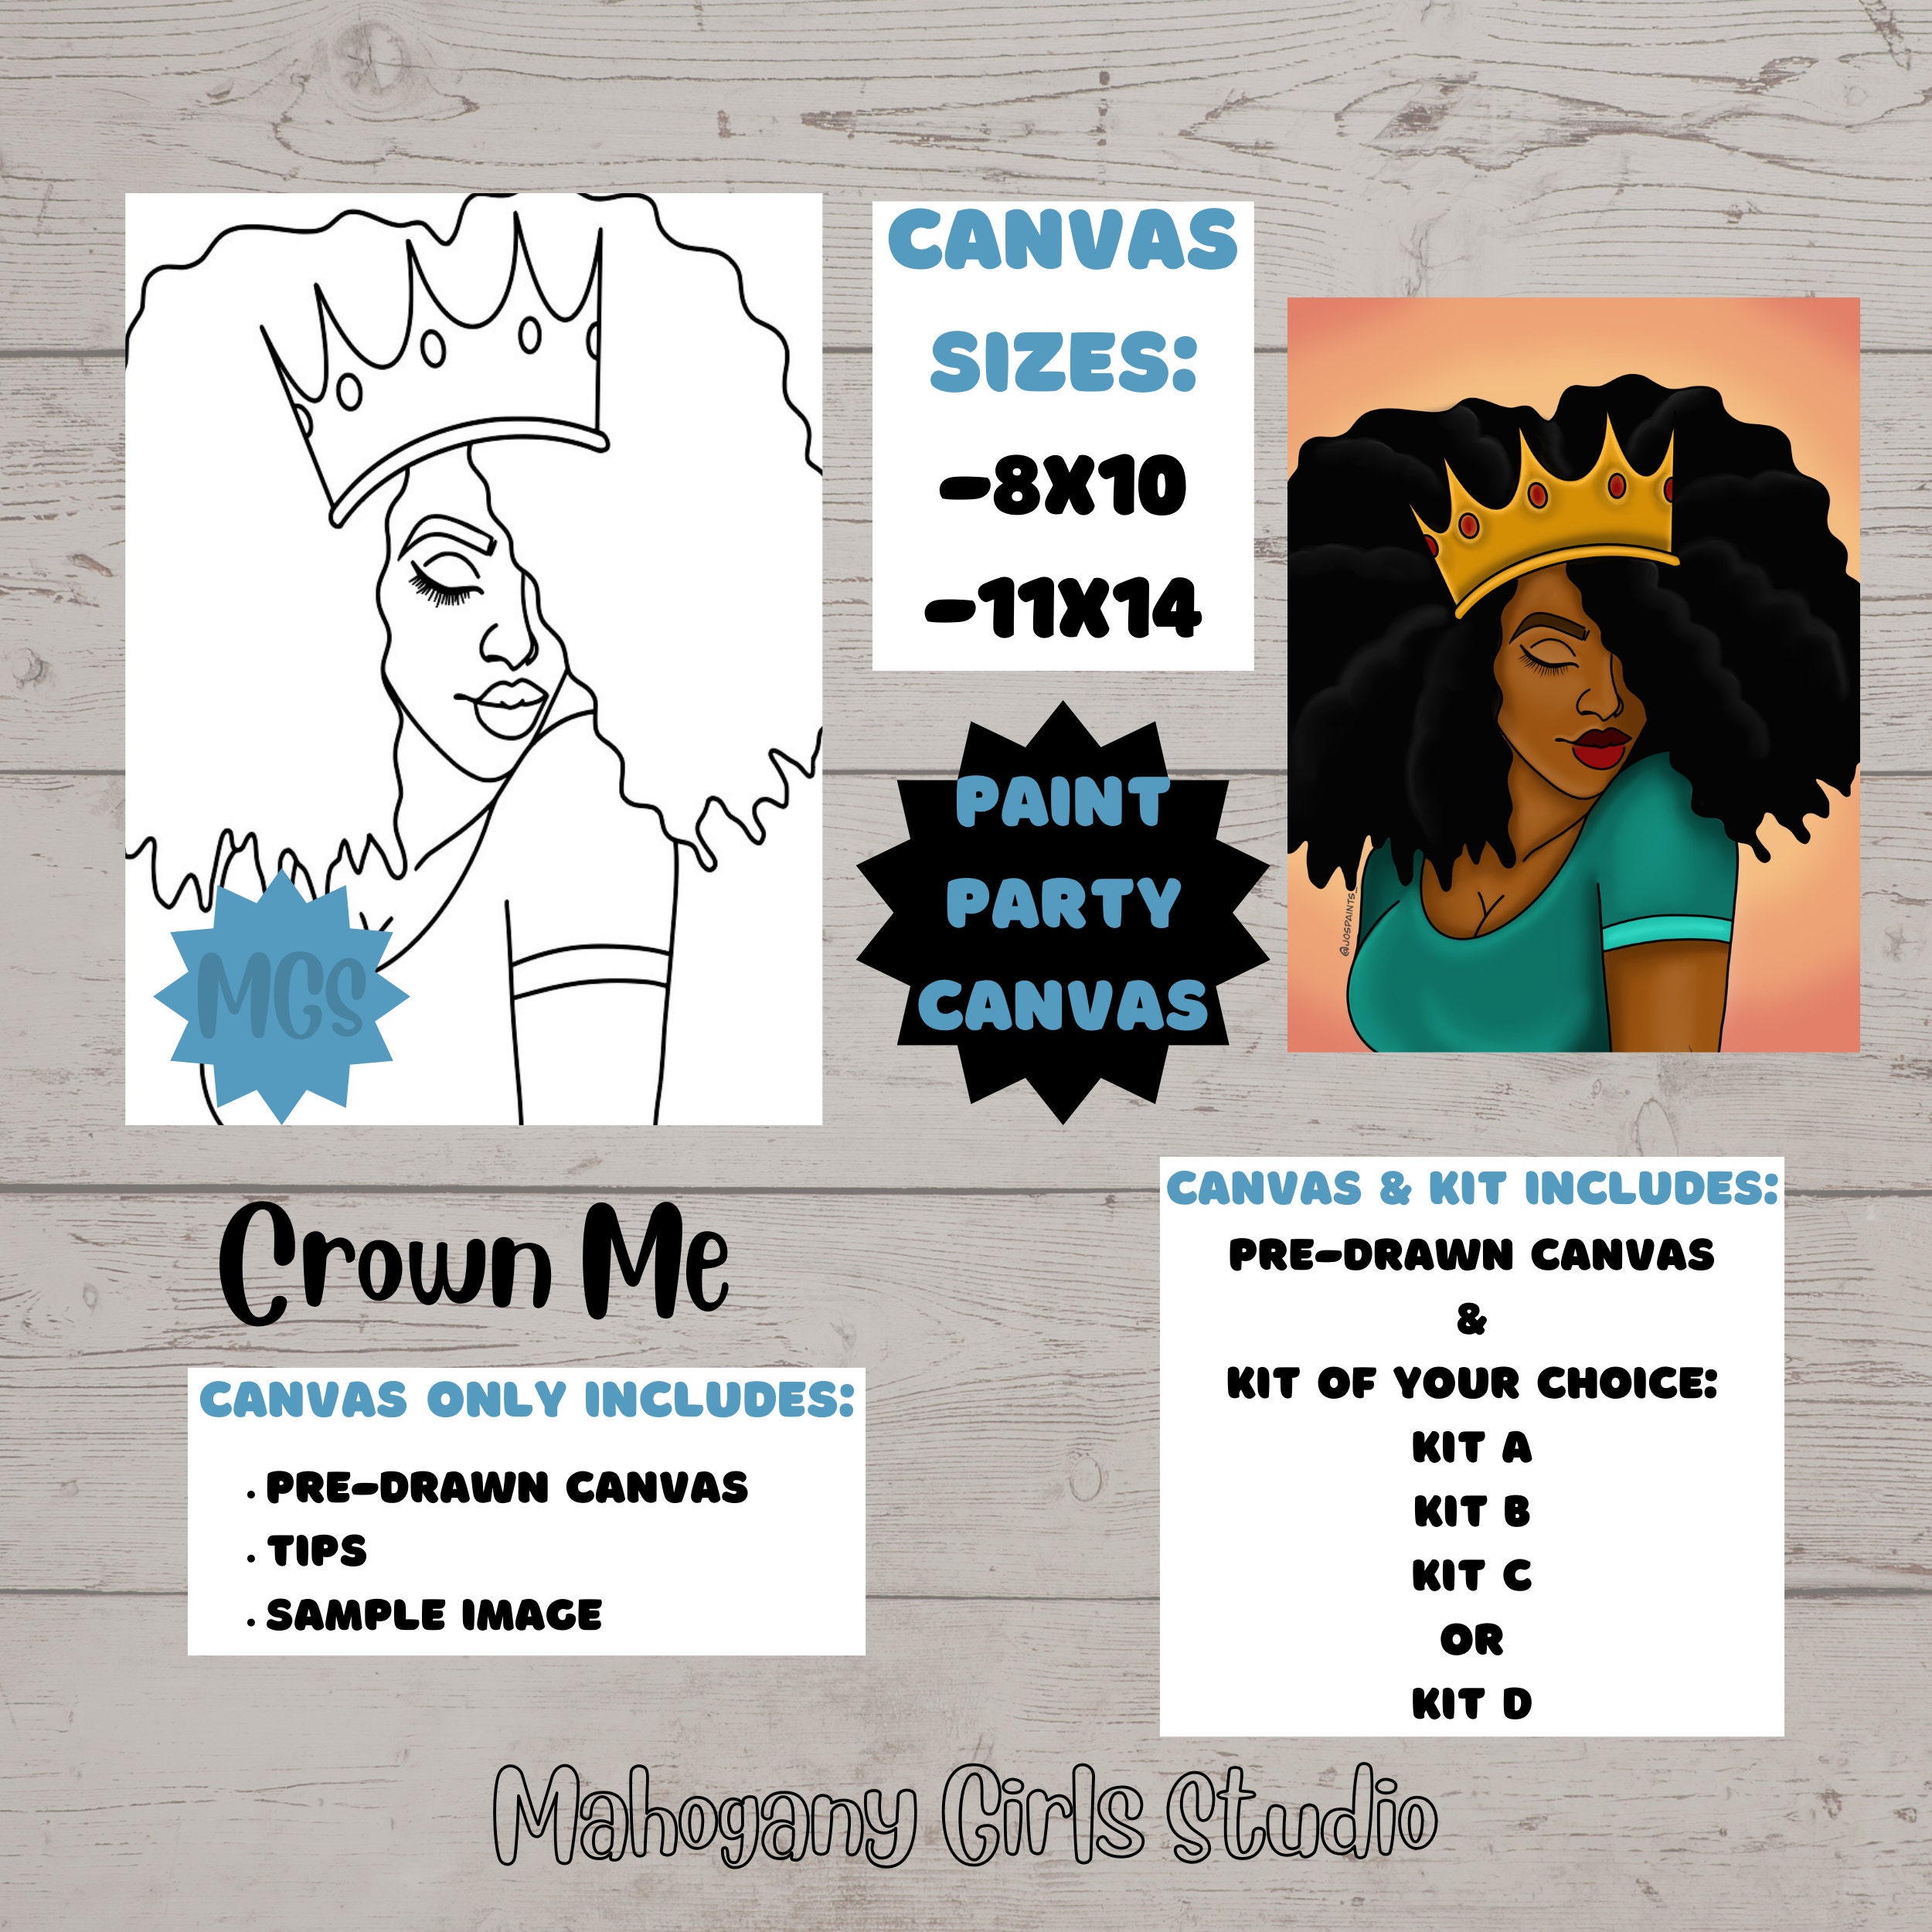  12x16 Canvas Paint Party Kits Pre-Drawn Outline Canvas